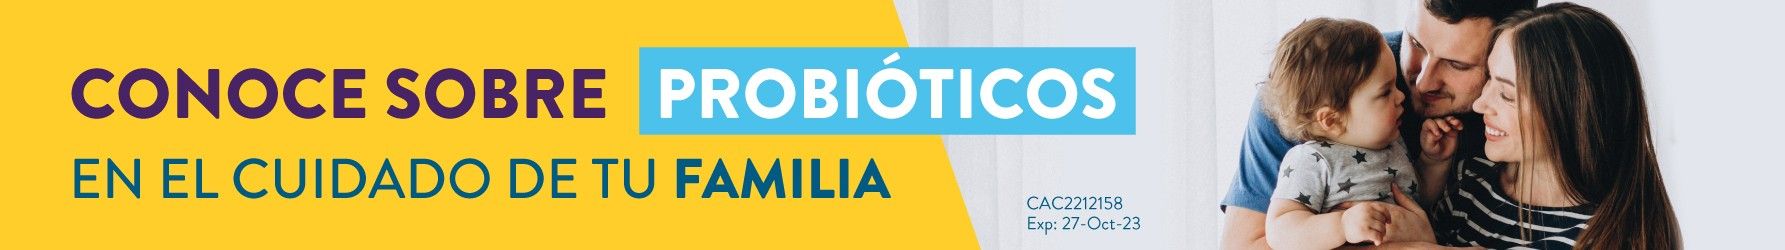 Probioticos